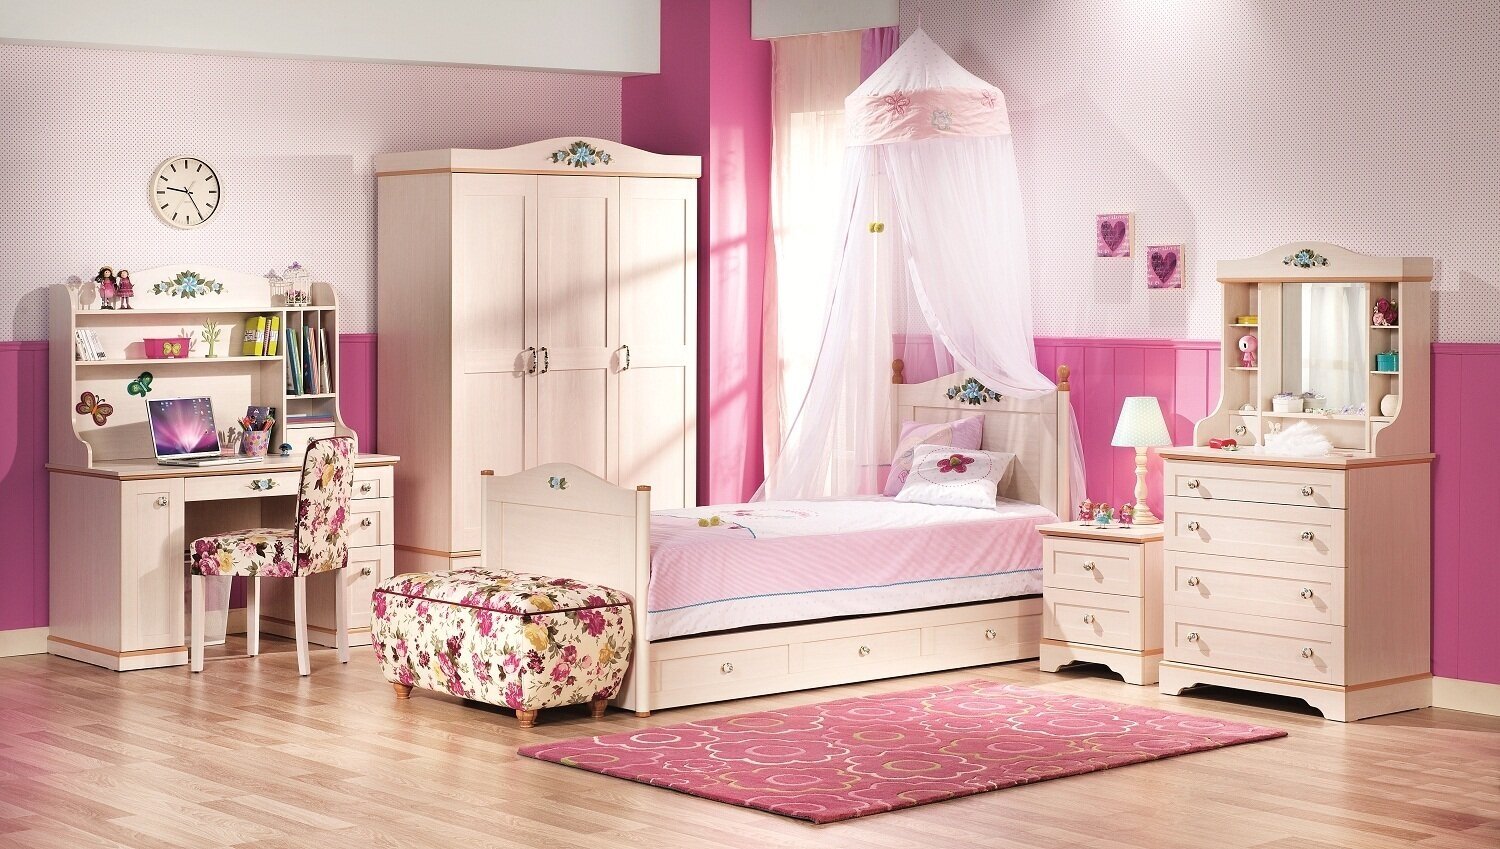 Комплект мебели для детской Flora, слоновая кость, 3-дверный шкаф, стеллаж, стол, перегородка безопасности (2 шт.)